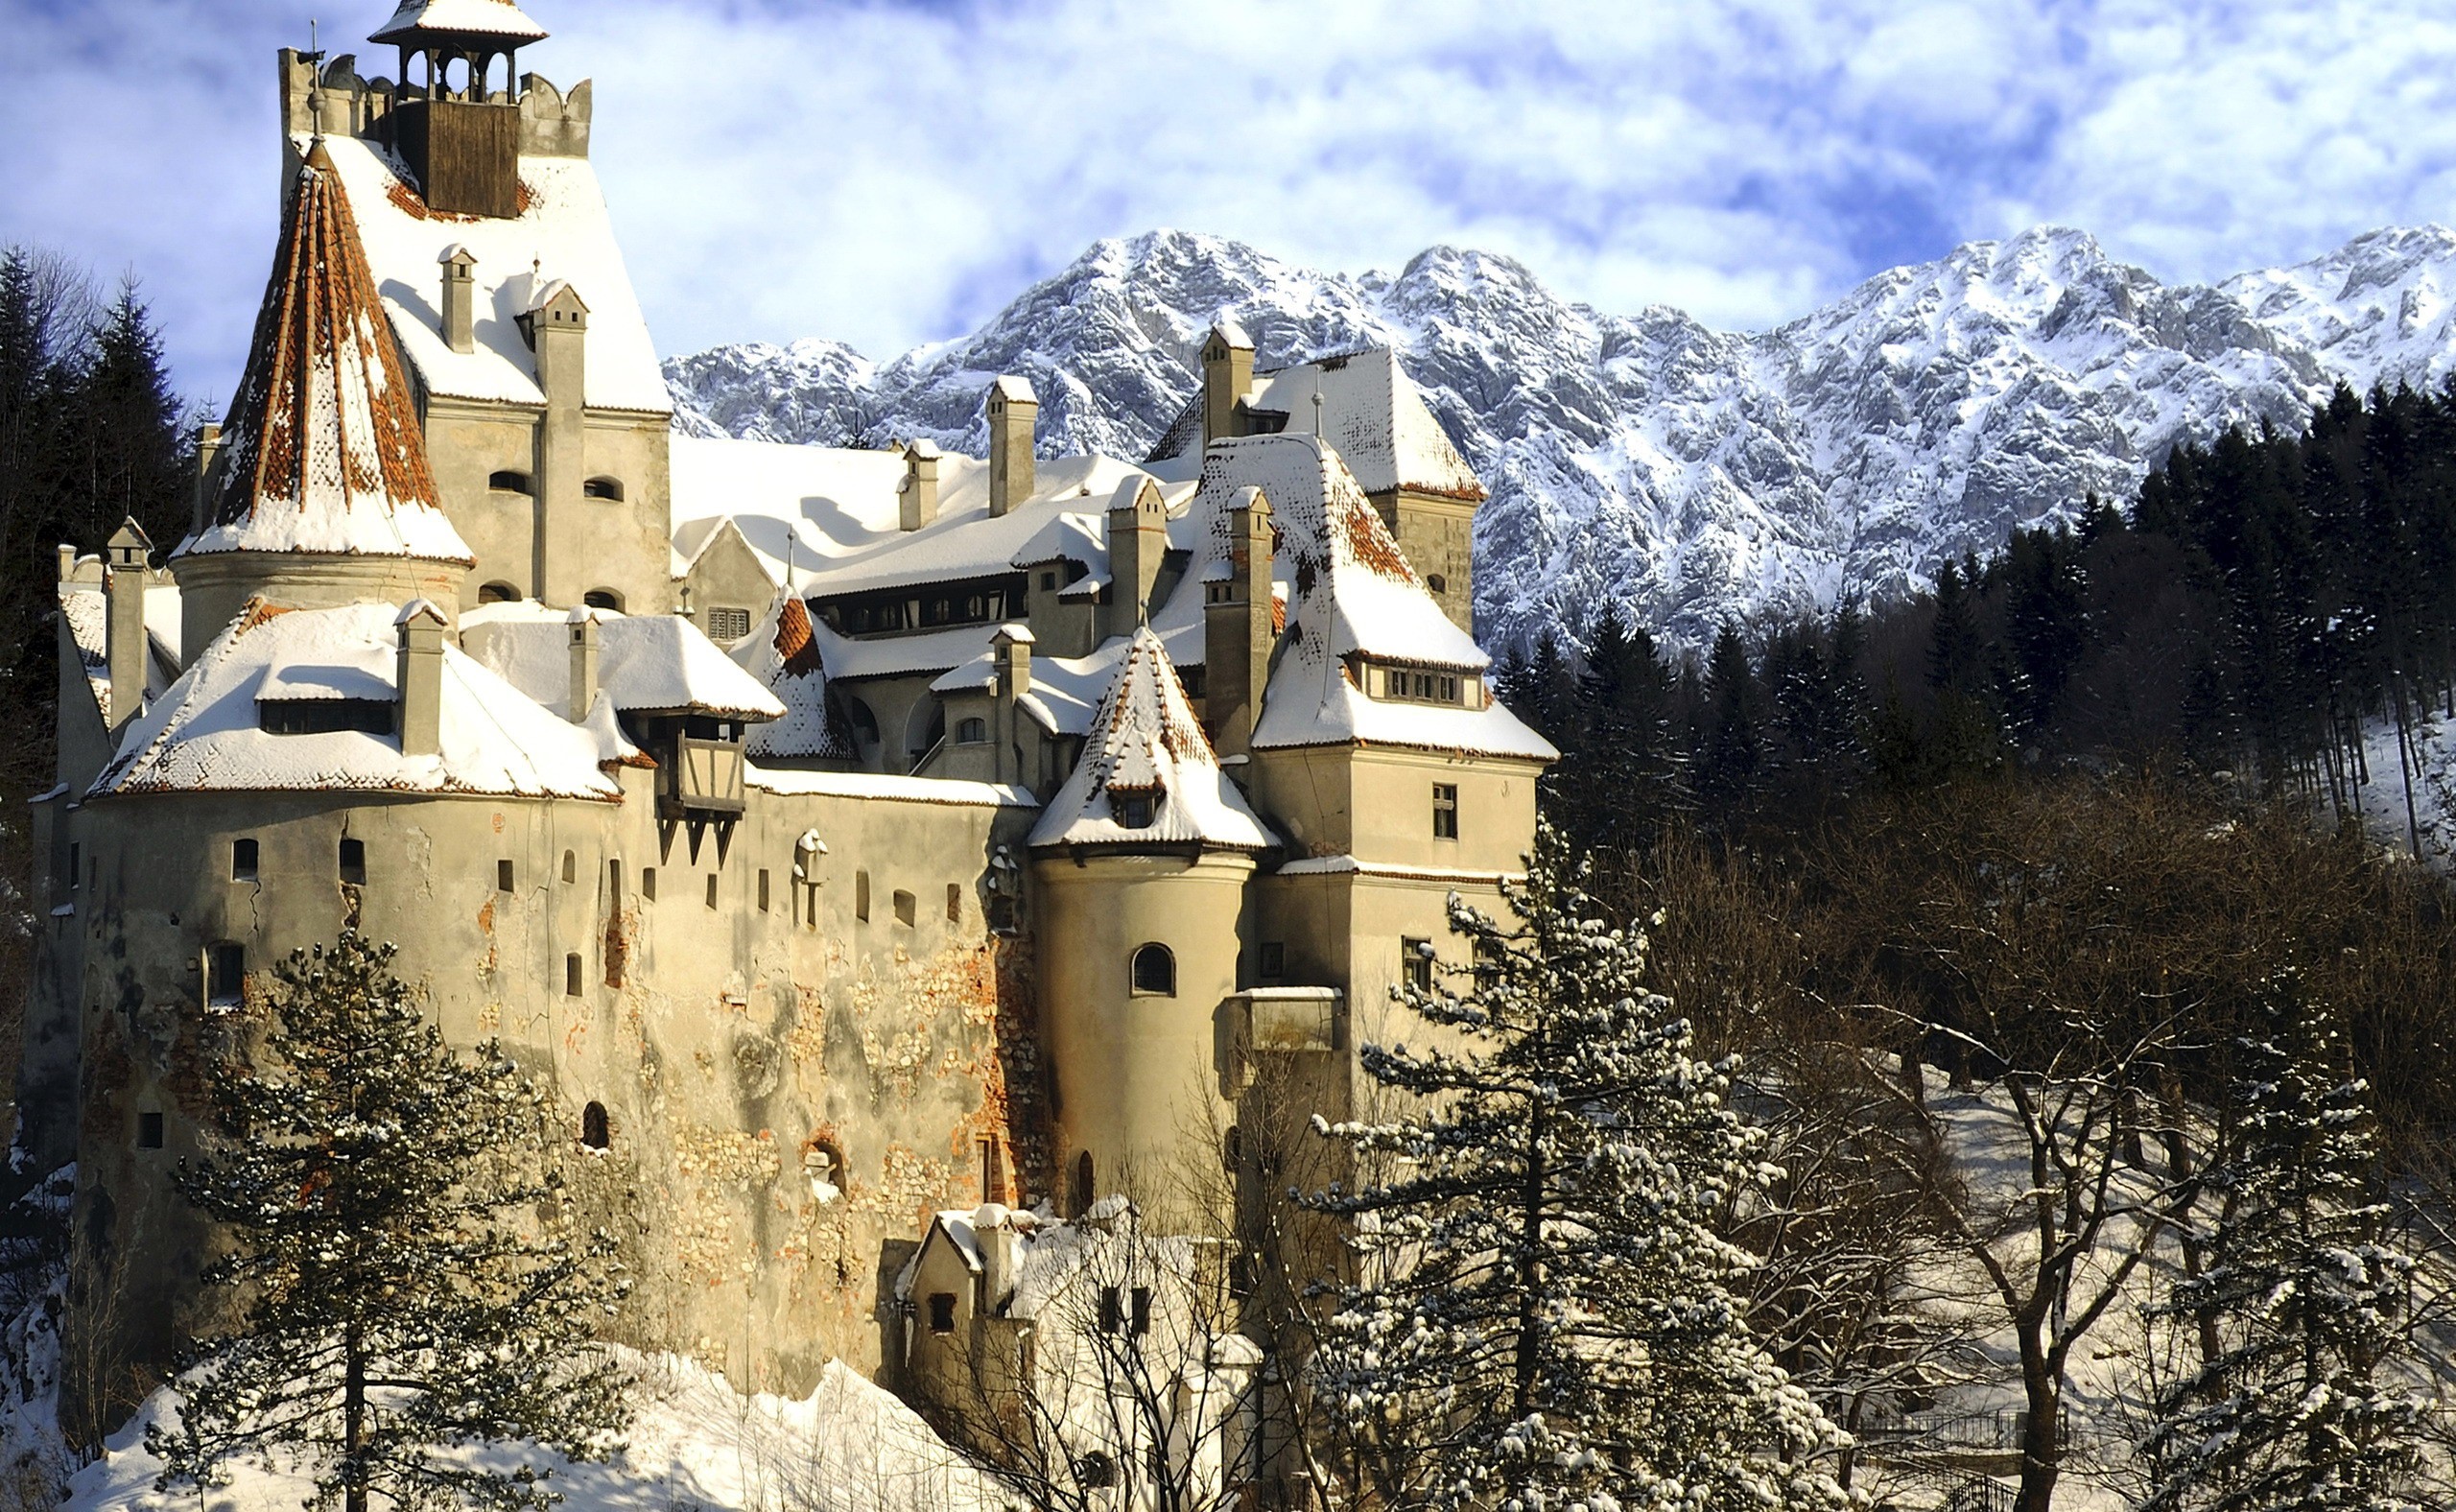 General 2560x1576 castle building mountains landscape winter snow Romania